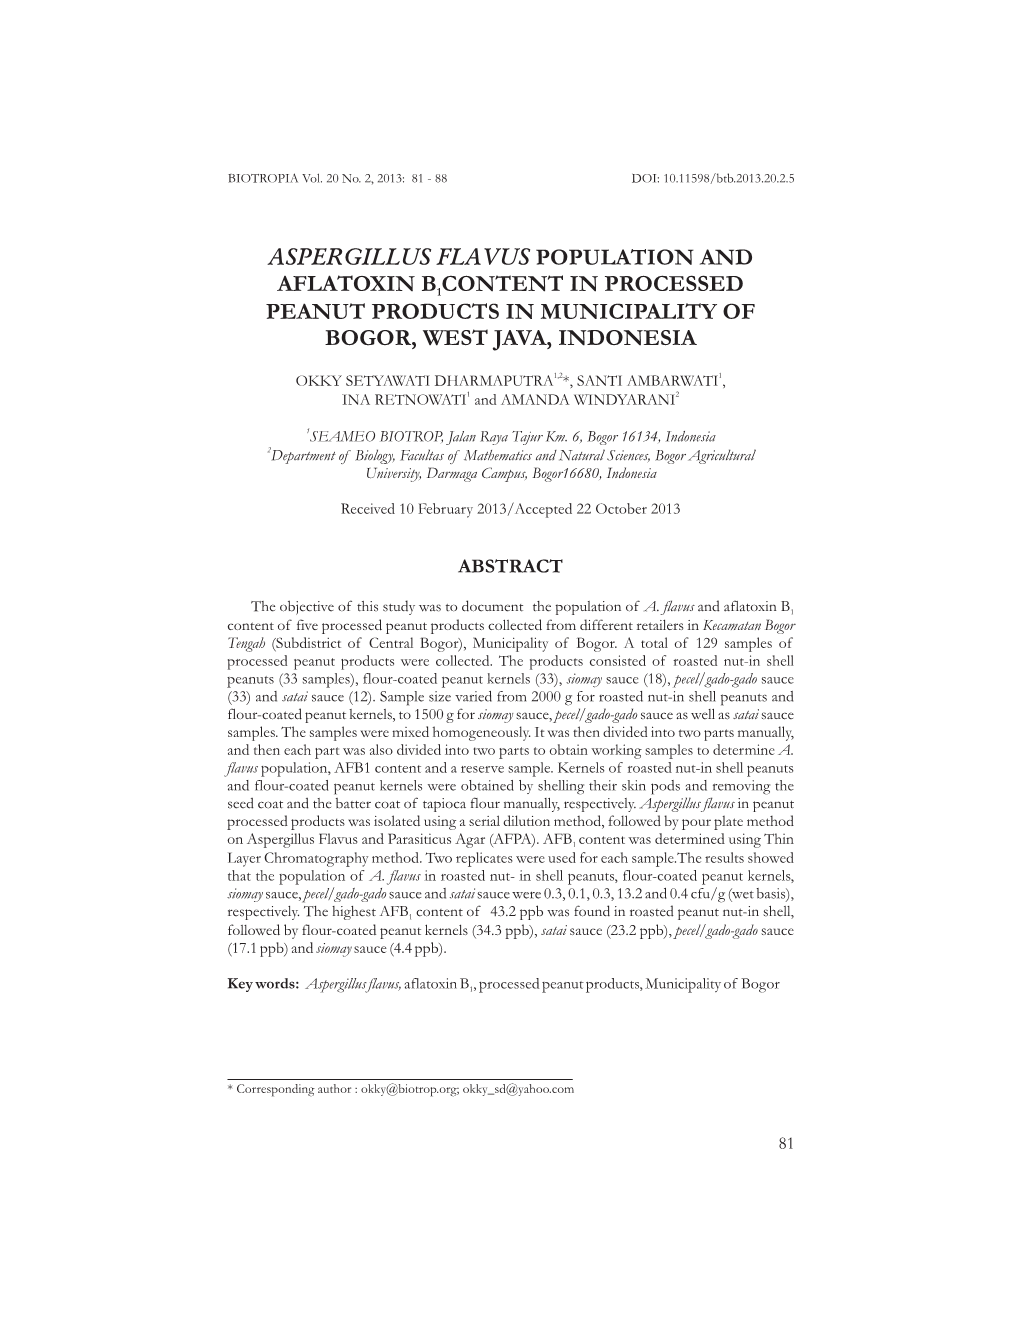 Aspergillus Flavus Population and Aflatoxin B Content in Processed